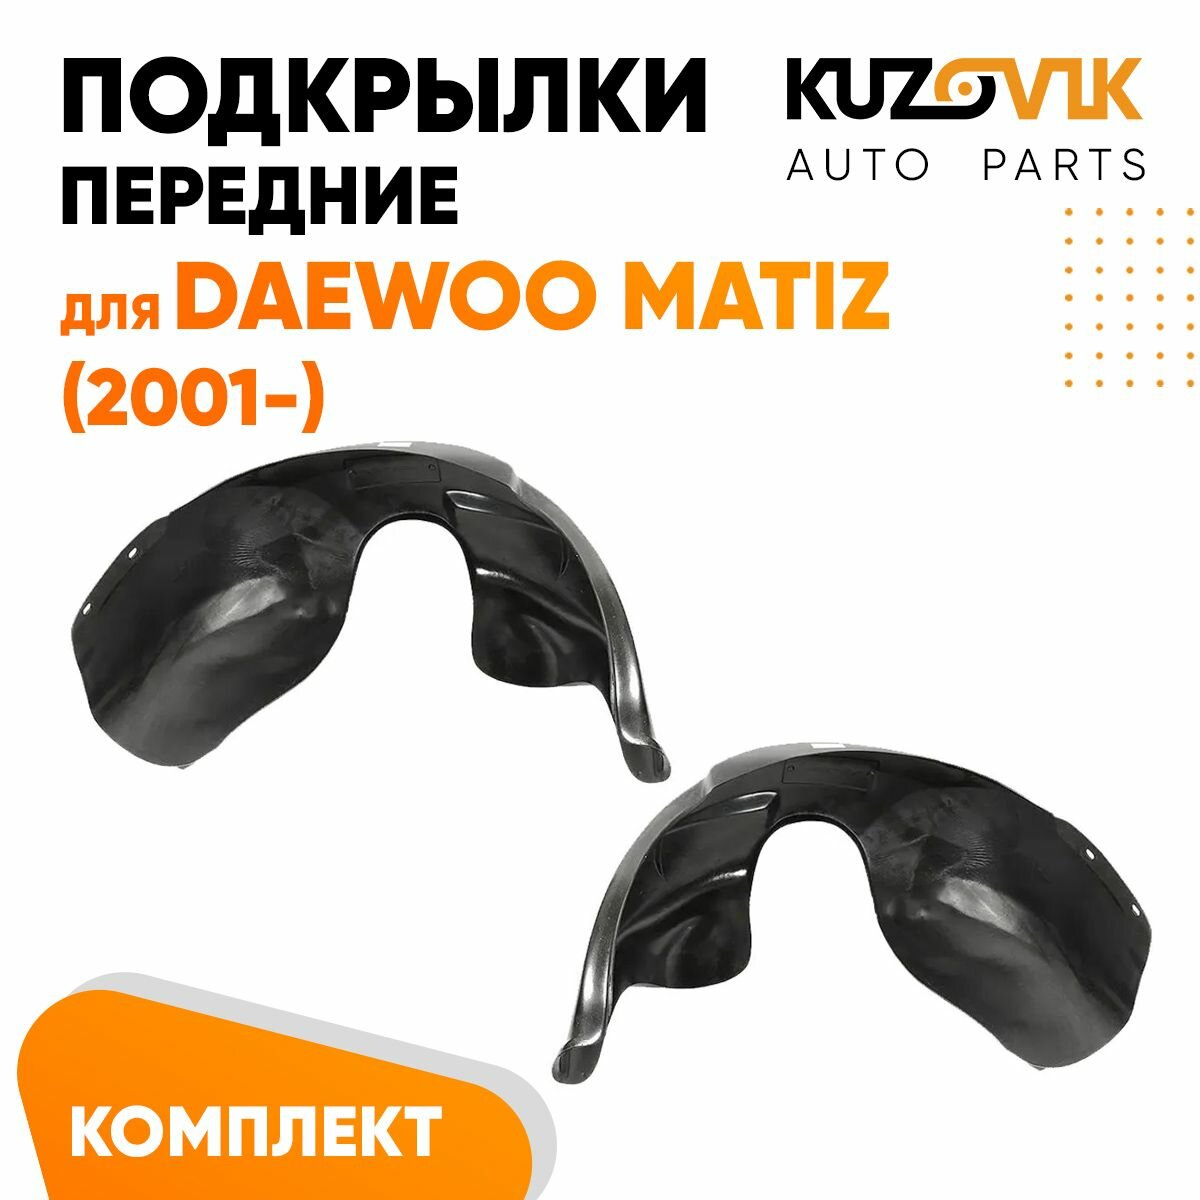 Подкрылки передние для Дэу Матиз Daewoo Matiz (2001-) комплект левый + правый 2 штуки, локер, защита крыла